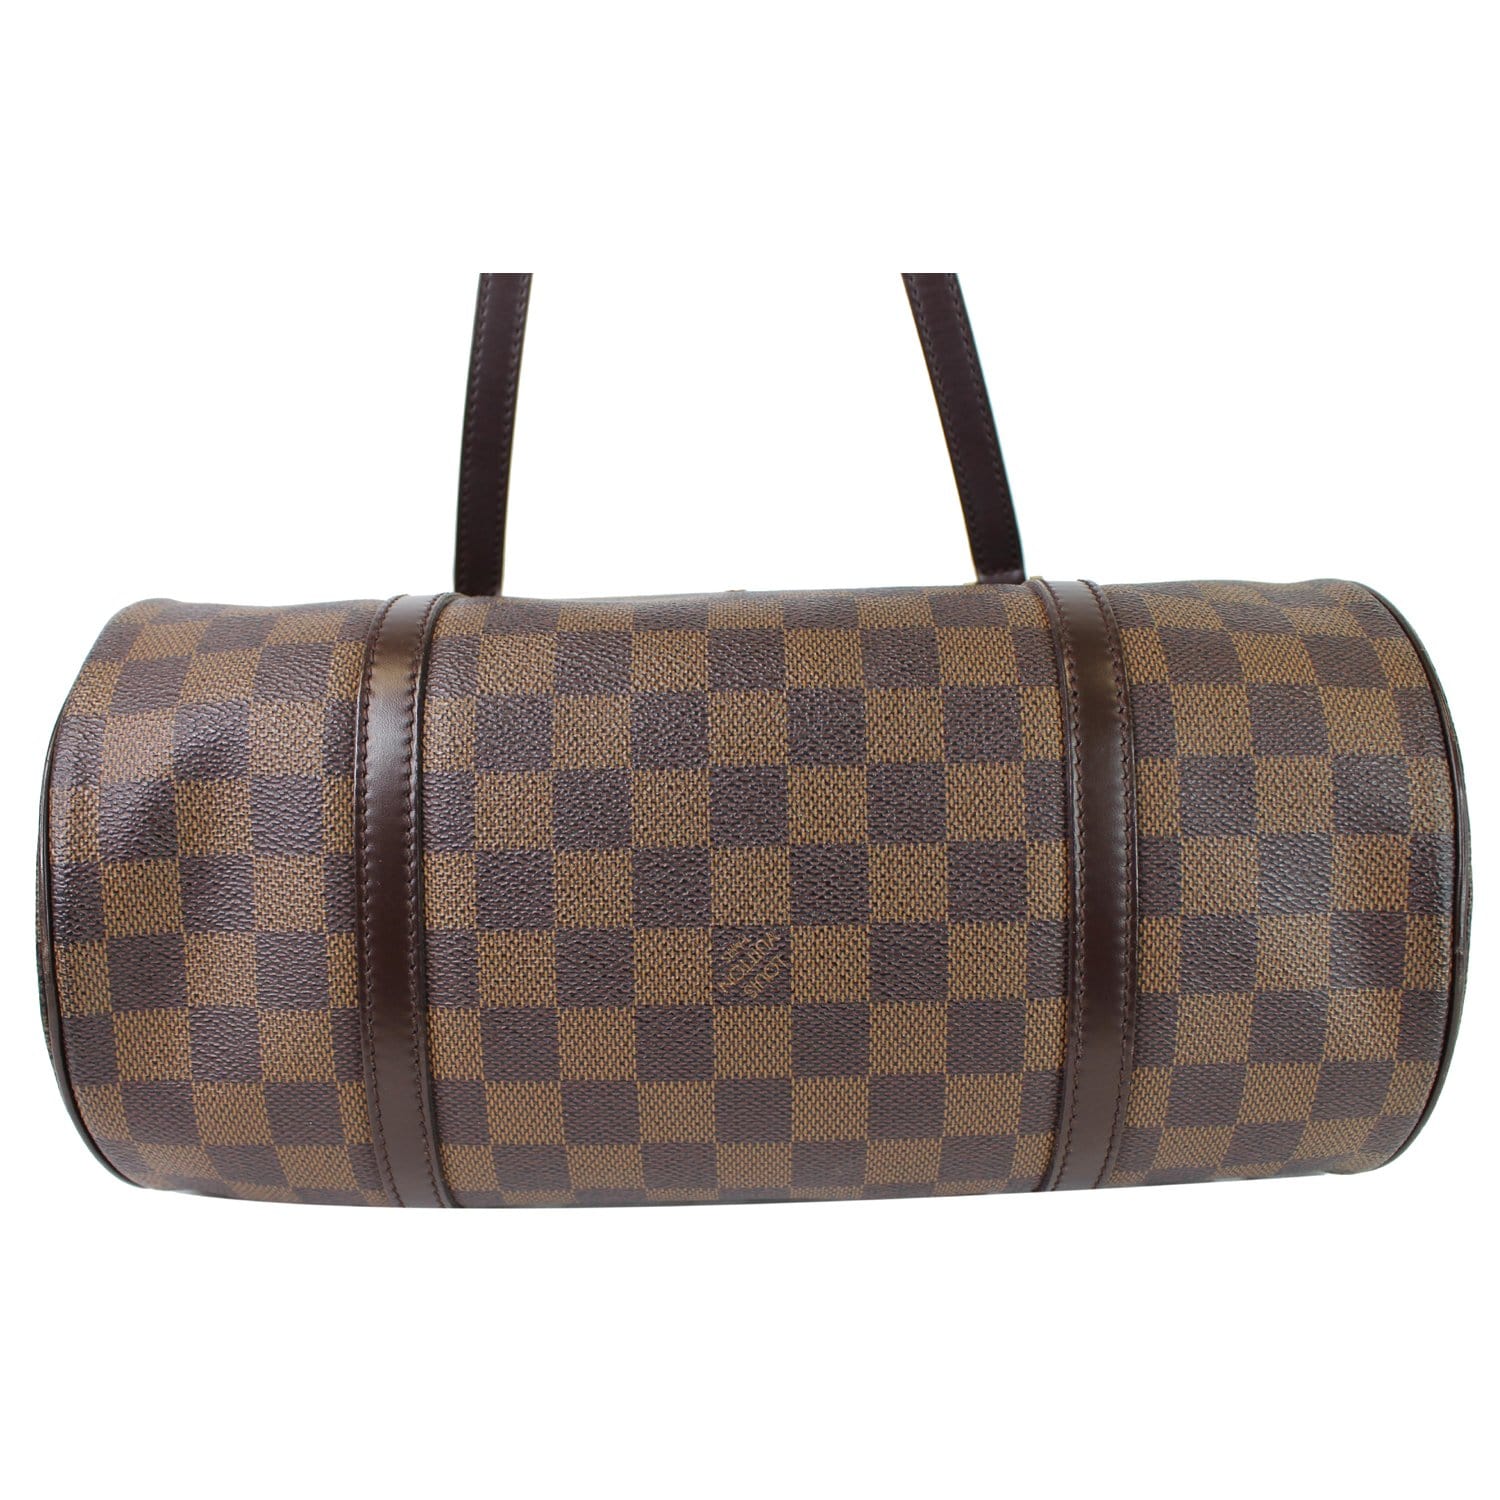 Brown Louis Vuitton Damier Ebene Papillon 30 Handbag